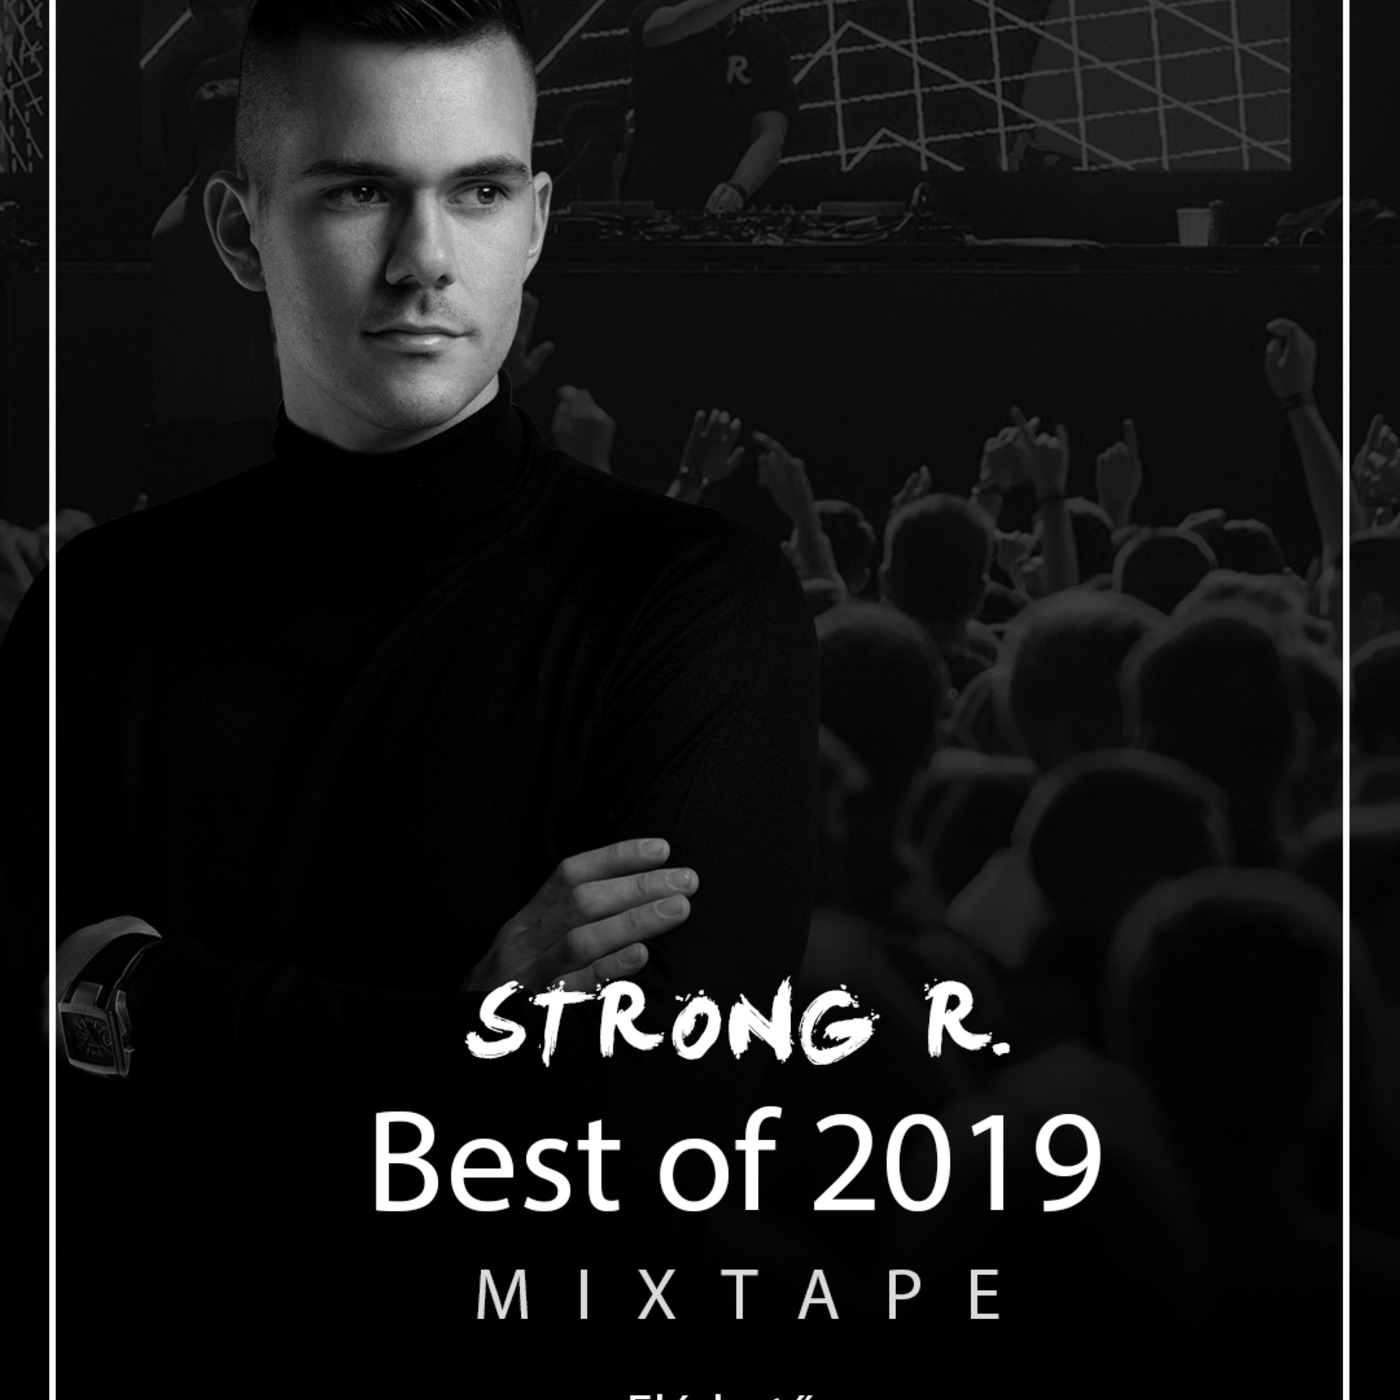 Strong R. - Best of 2019 #mixtape